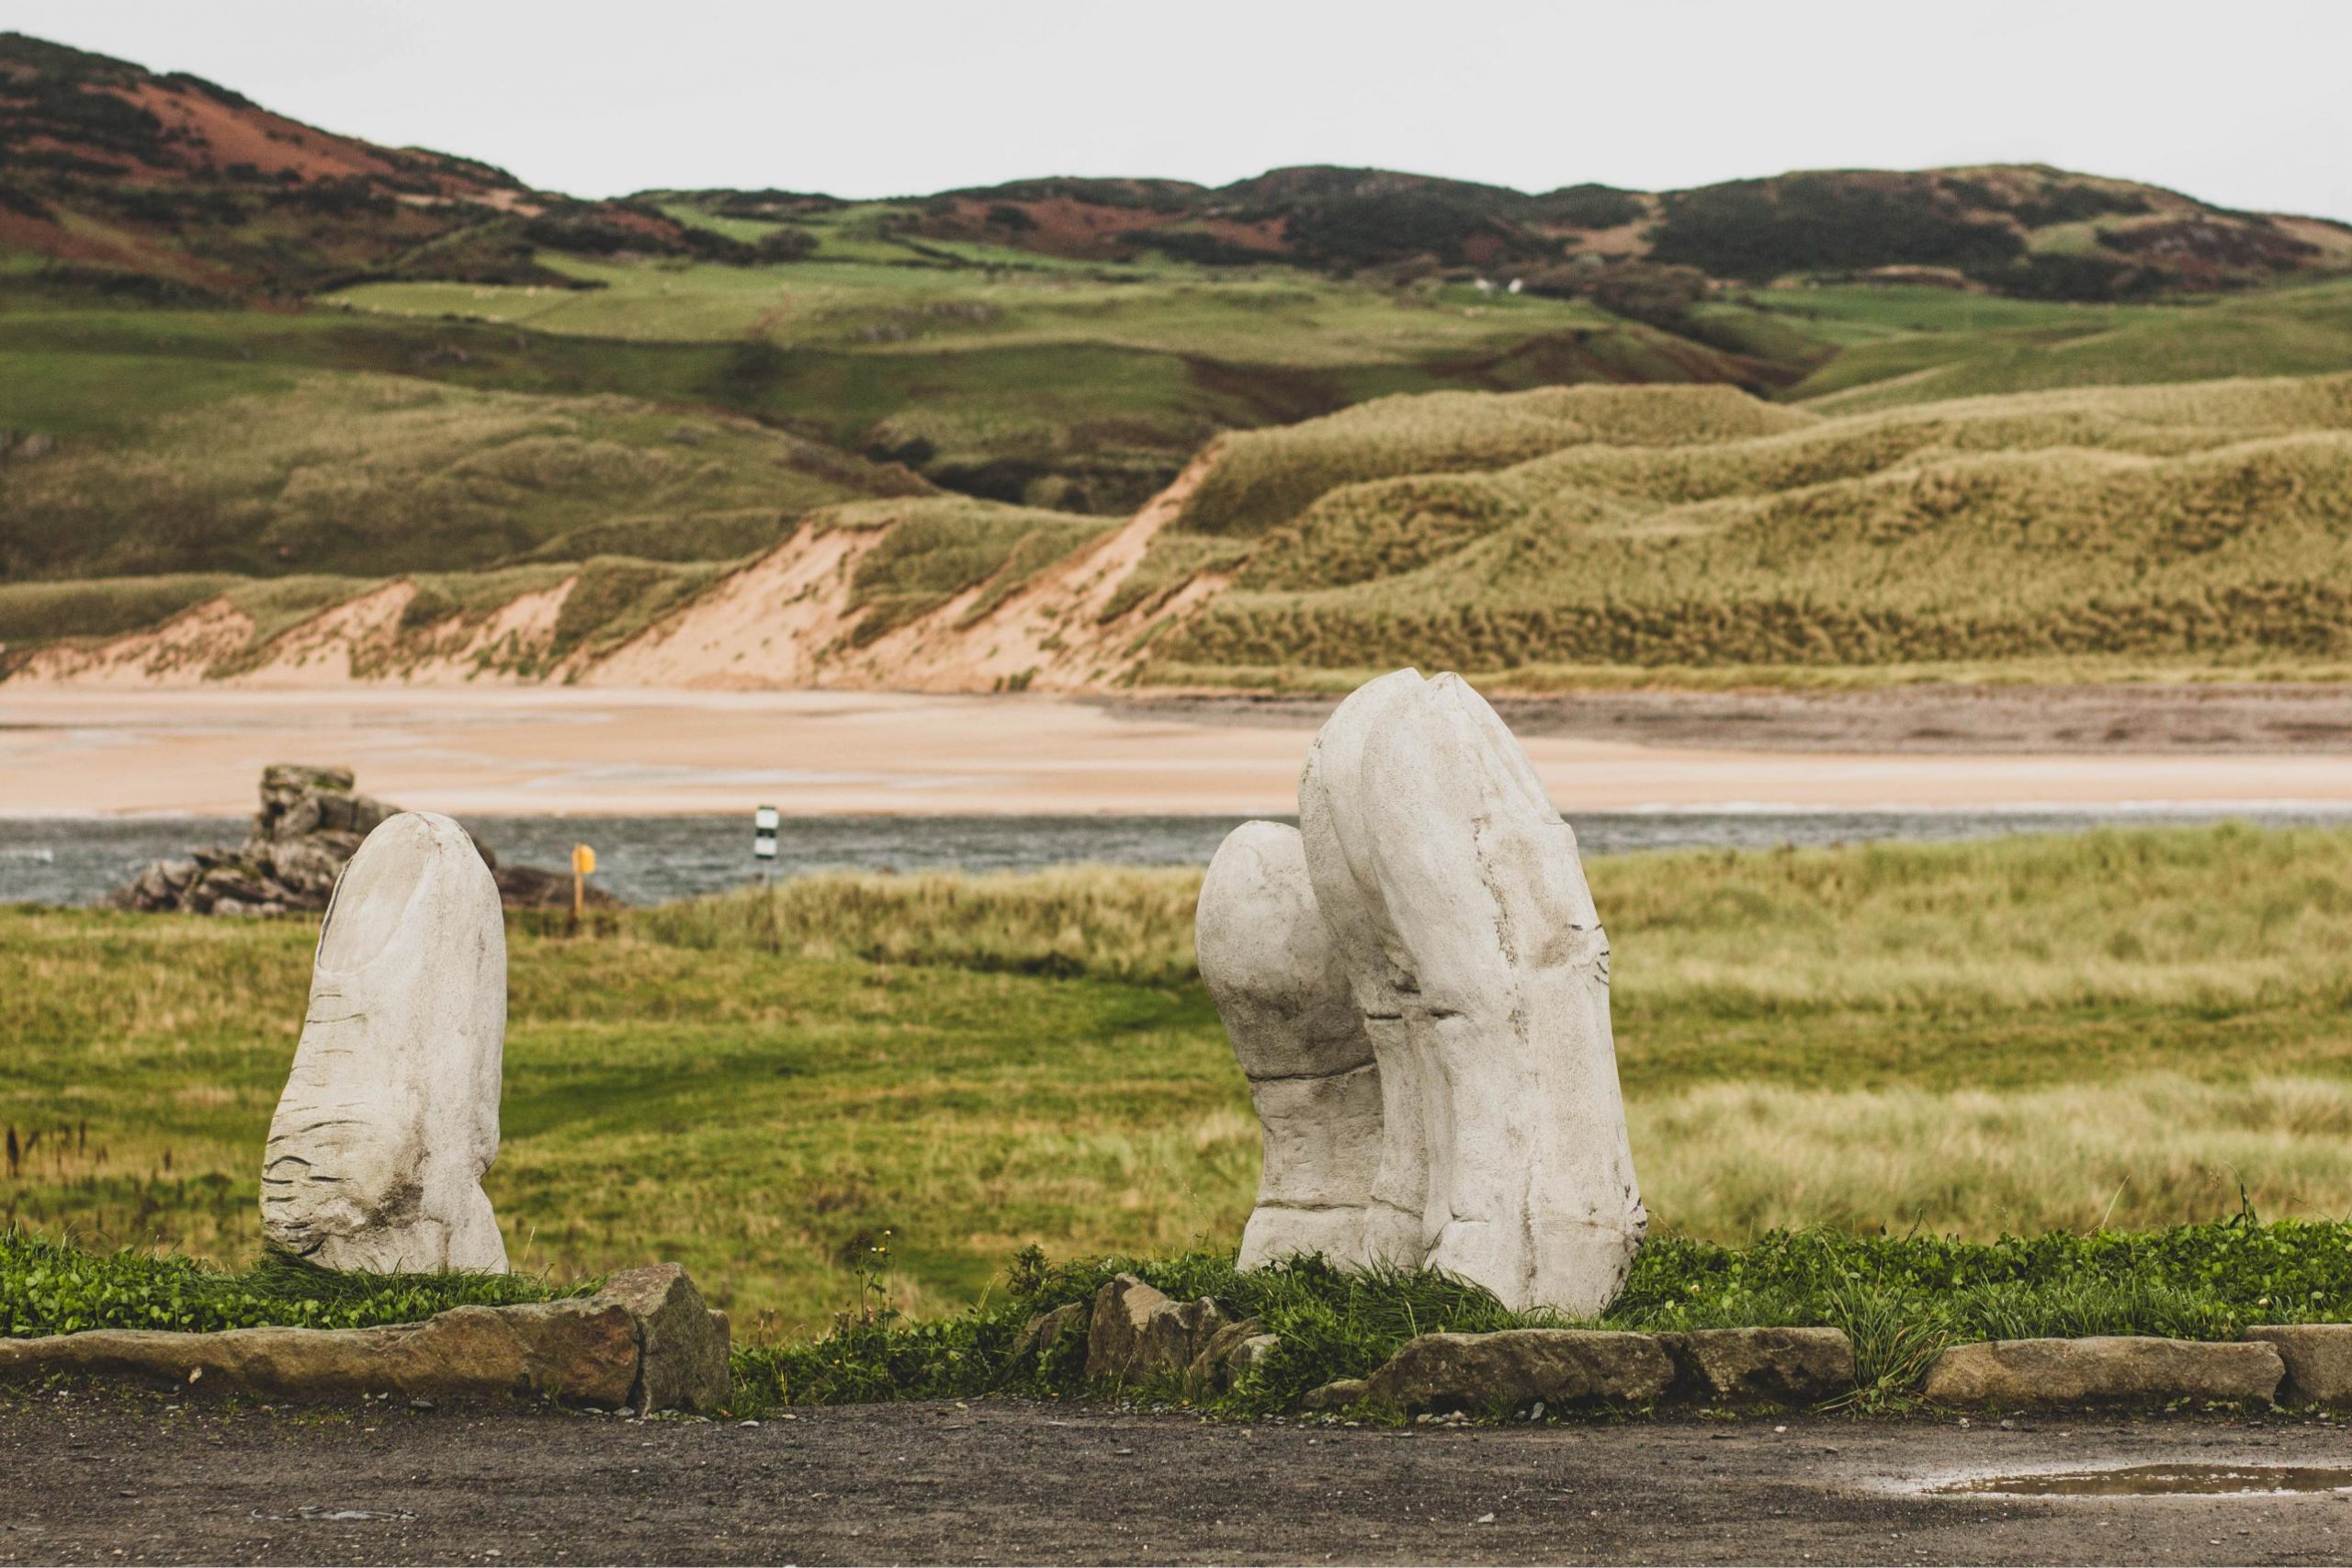 Visiter la péninsule d'Inishowen dans le Donegal